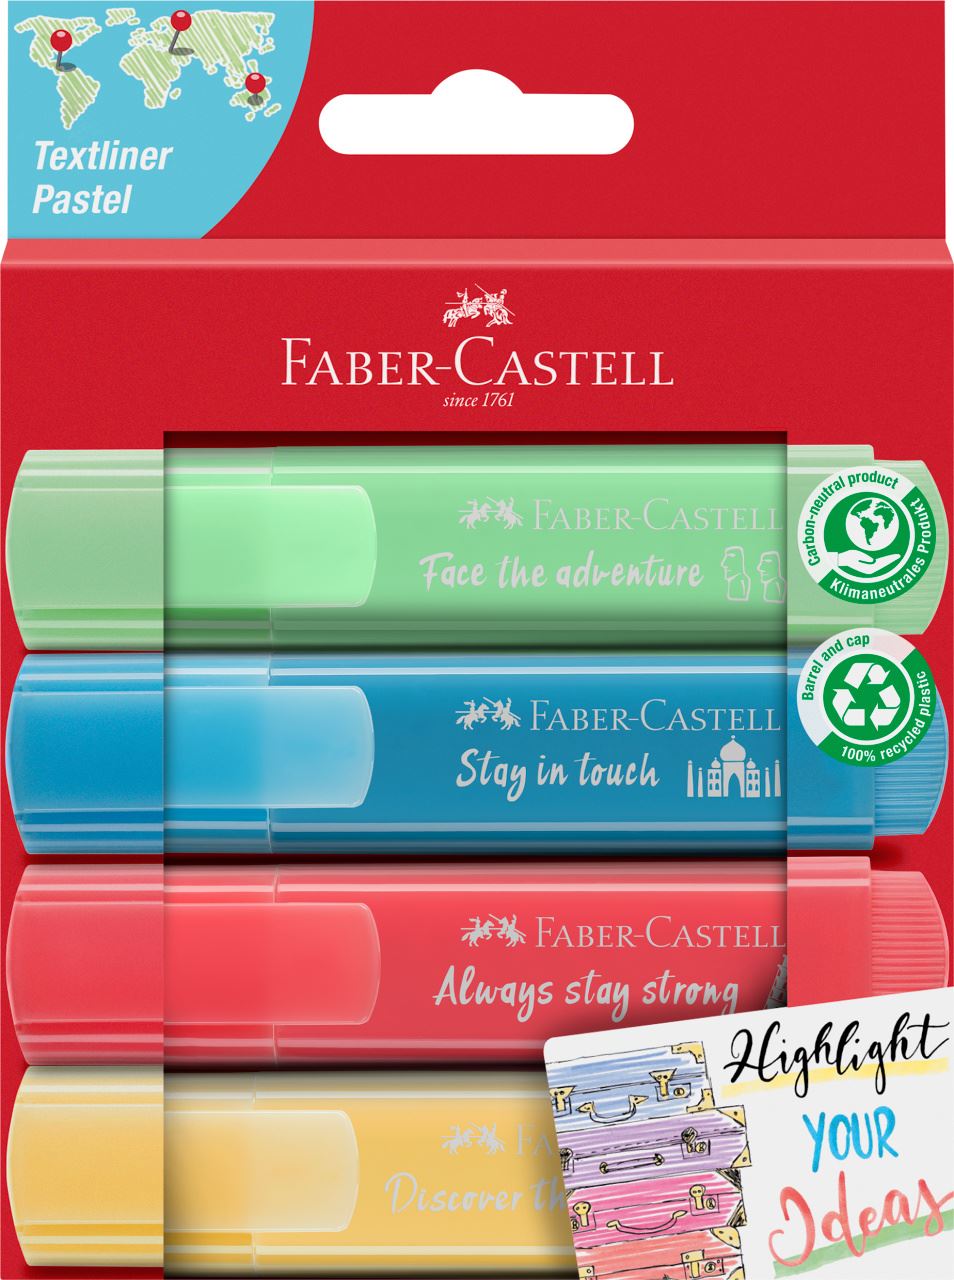 Faber-Castell - Surligneurs TL 46 Pastel promo carton 4x